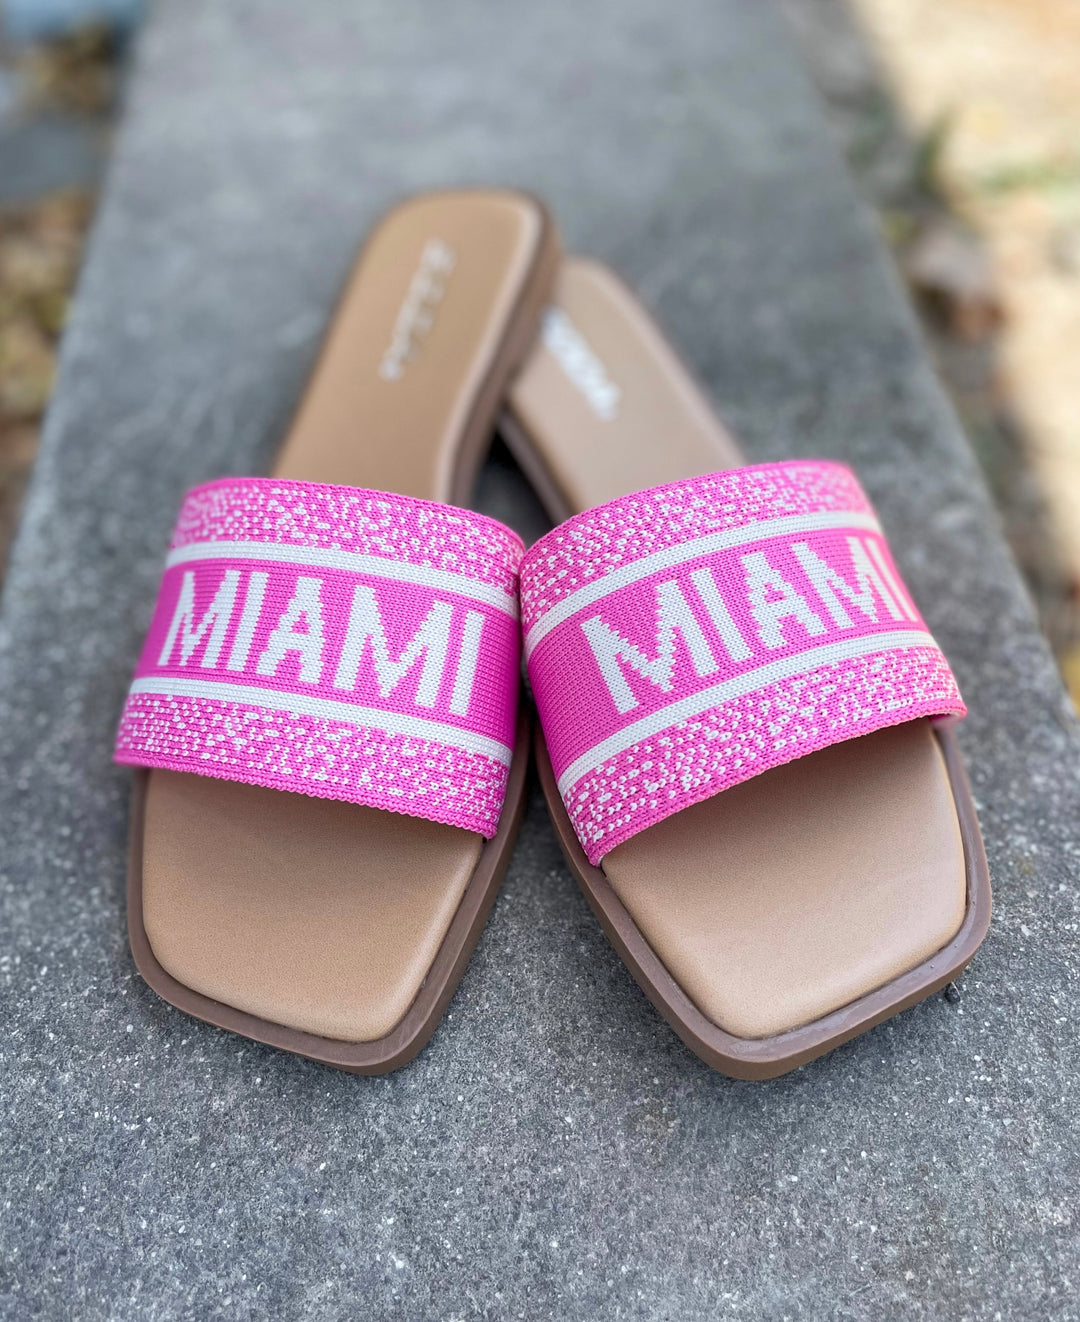 The Miami Sandals